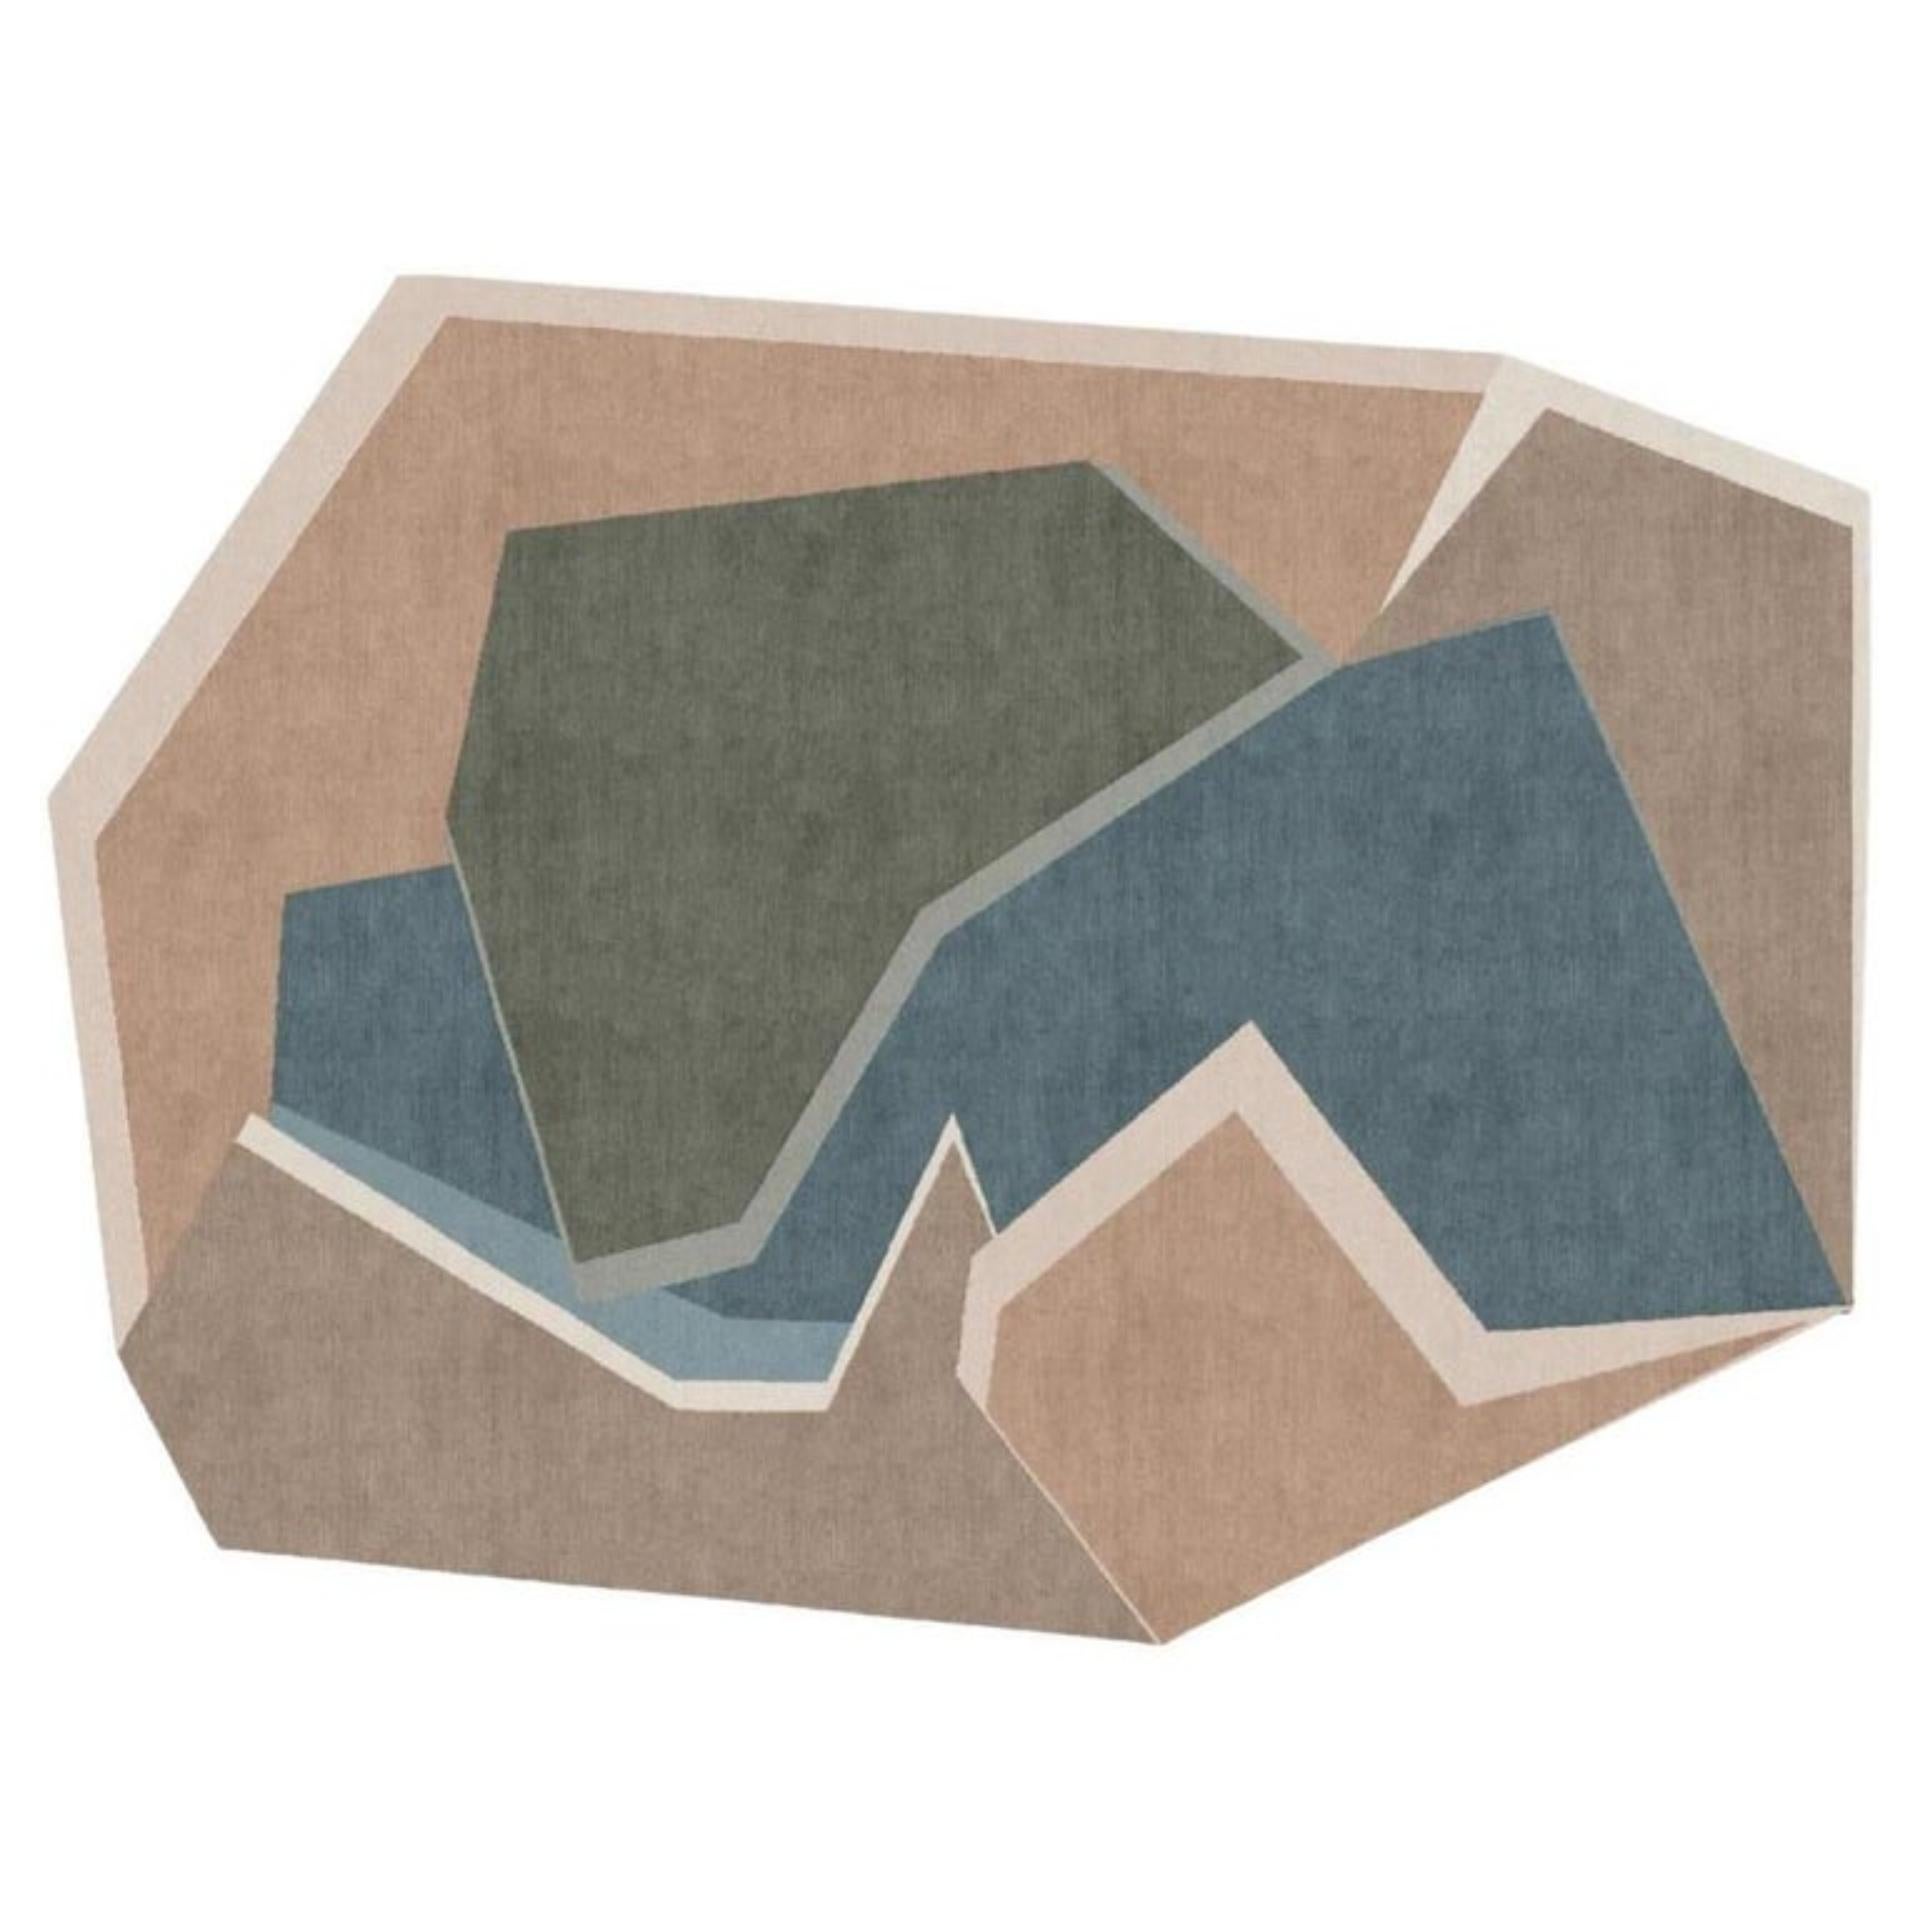 Mittlerer Teppich Cocoon von Art & Loom
Abmessungen: T 274,3 x H 365,8 cm
MATERIALIEN: 100% Neuseelandwolle
Qualität (Knoten pro Zoll): 80
Auch in anderen Abmessungen erhältlich.

Samantha Gallacher hatte schon immer einen scharfen Blick für